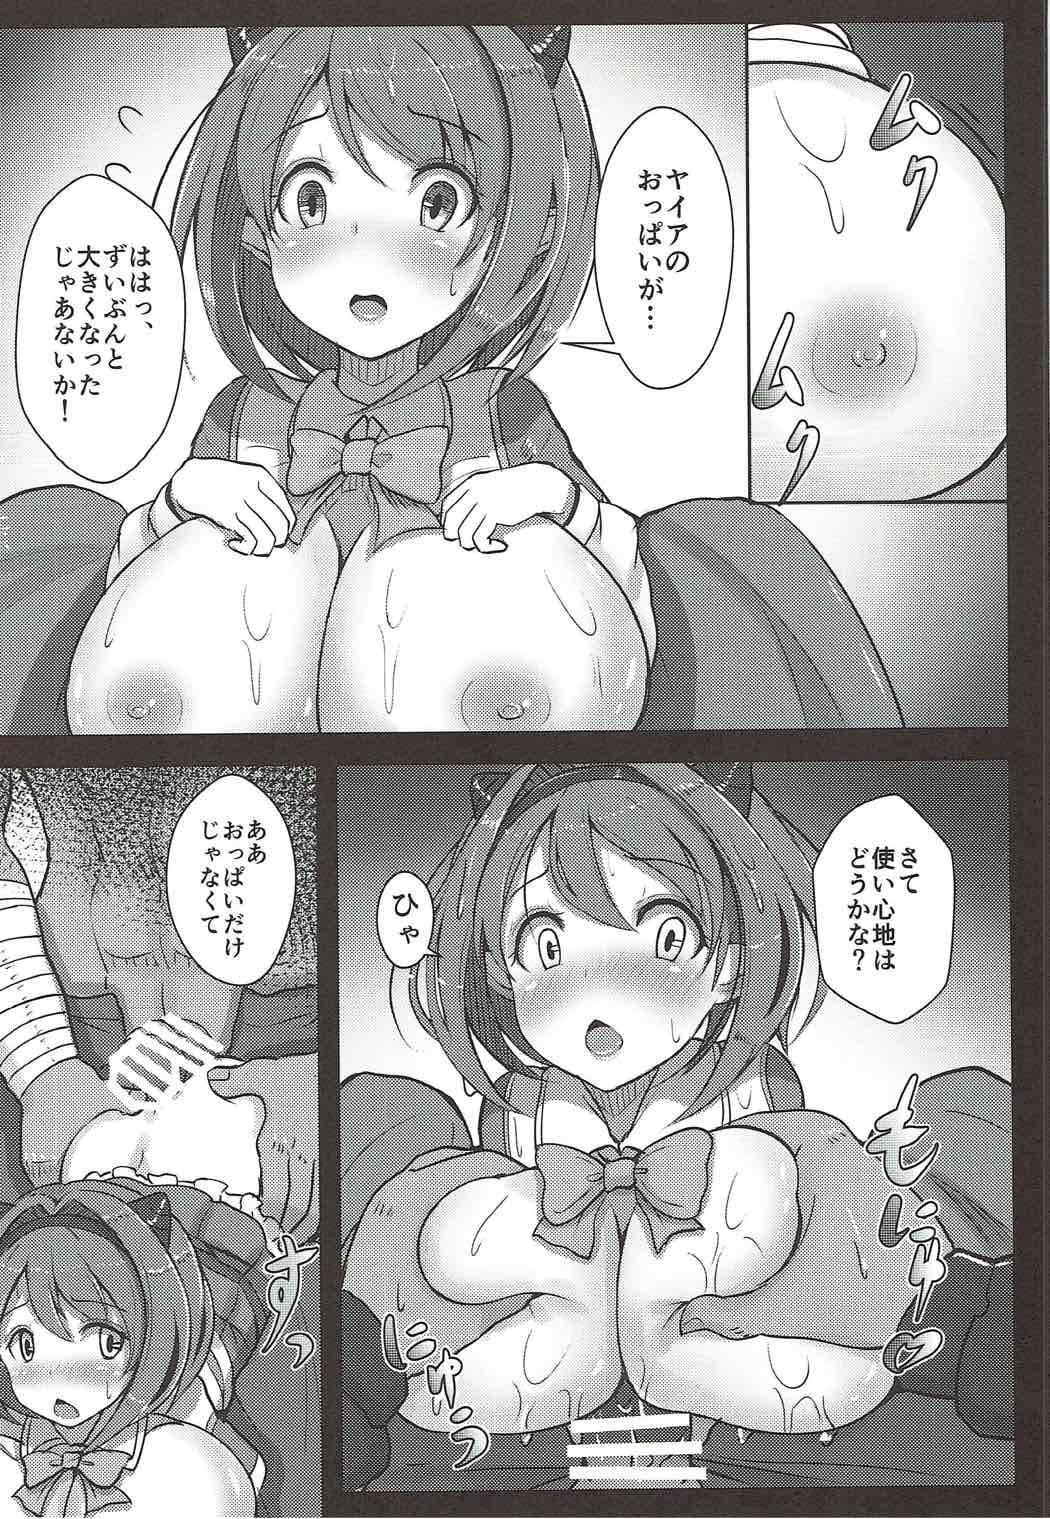 Nalgas Kawaisou na Yaia-chan - Granblue fantasy Babes - Page 11